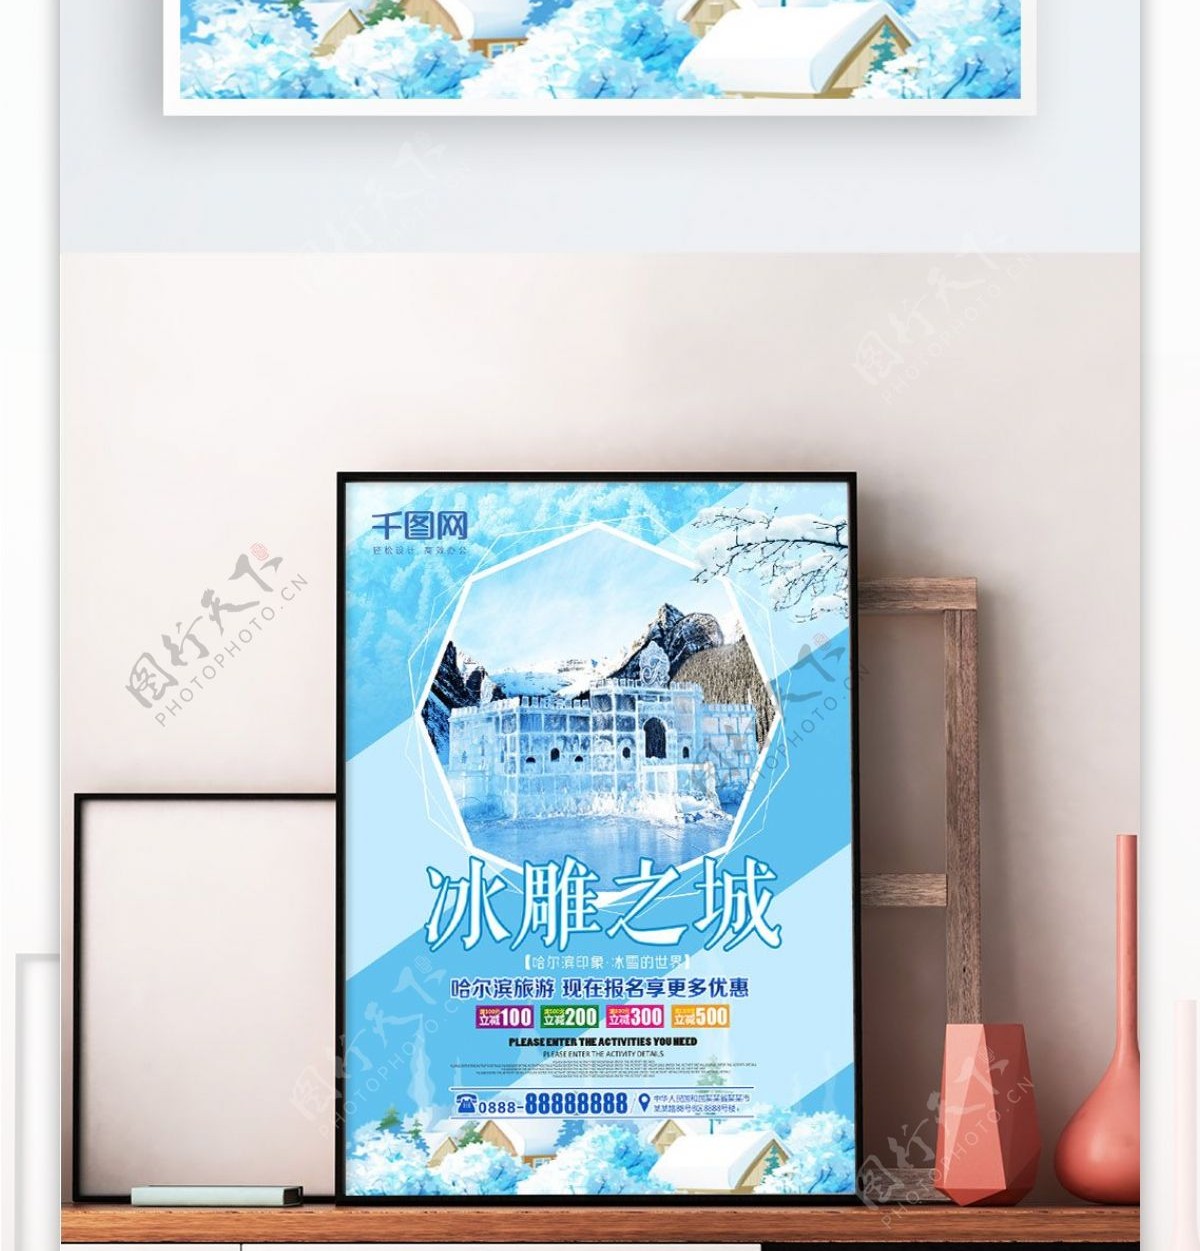 哈尔滨冰雕之城旅游海报